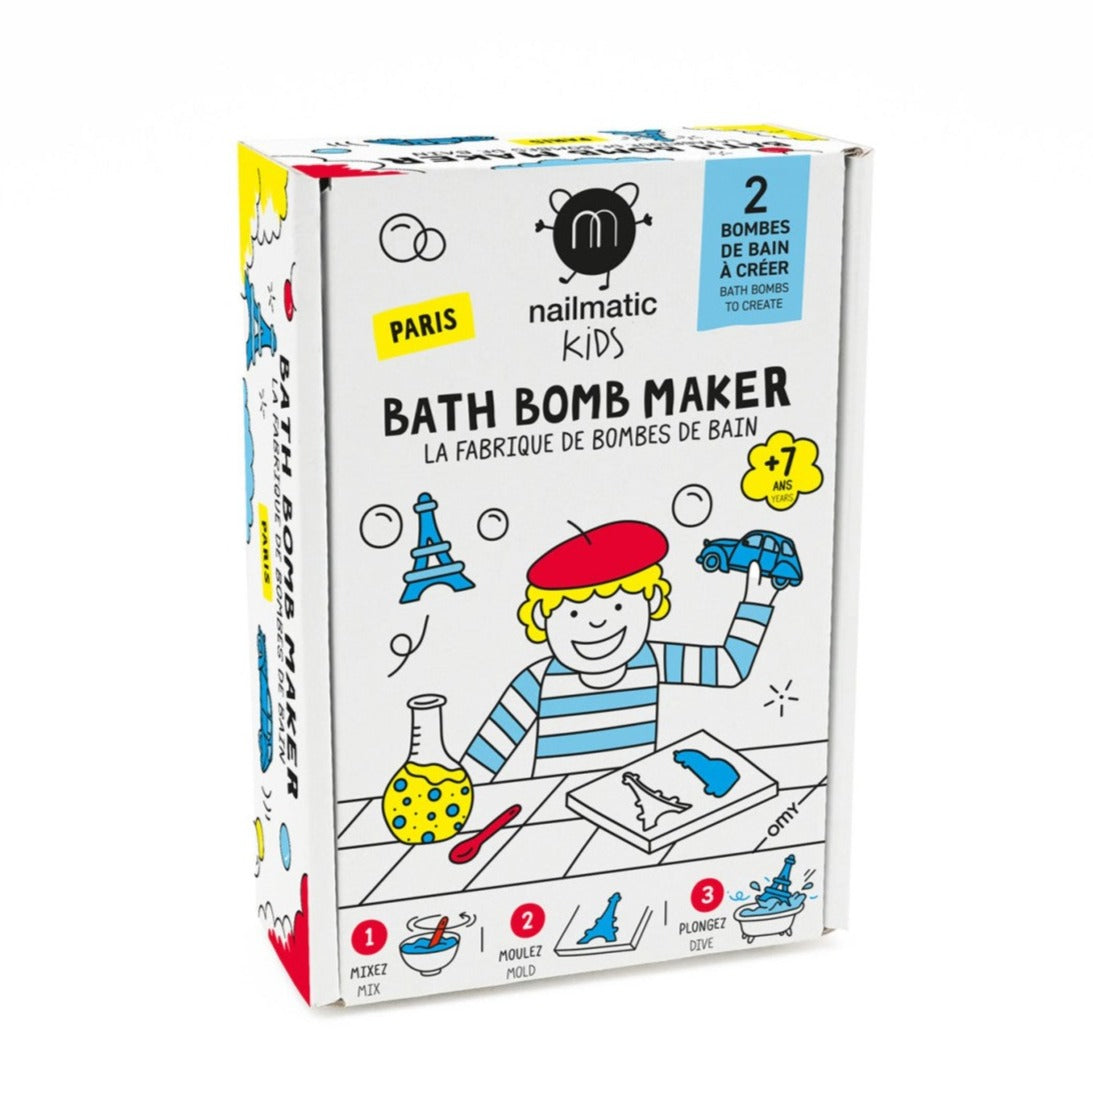 Bath Bomb Maker Paris - Nailmatic